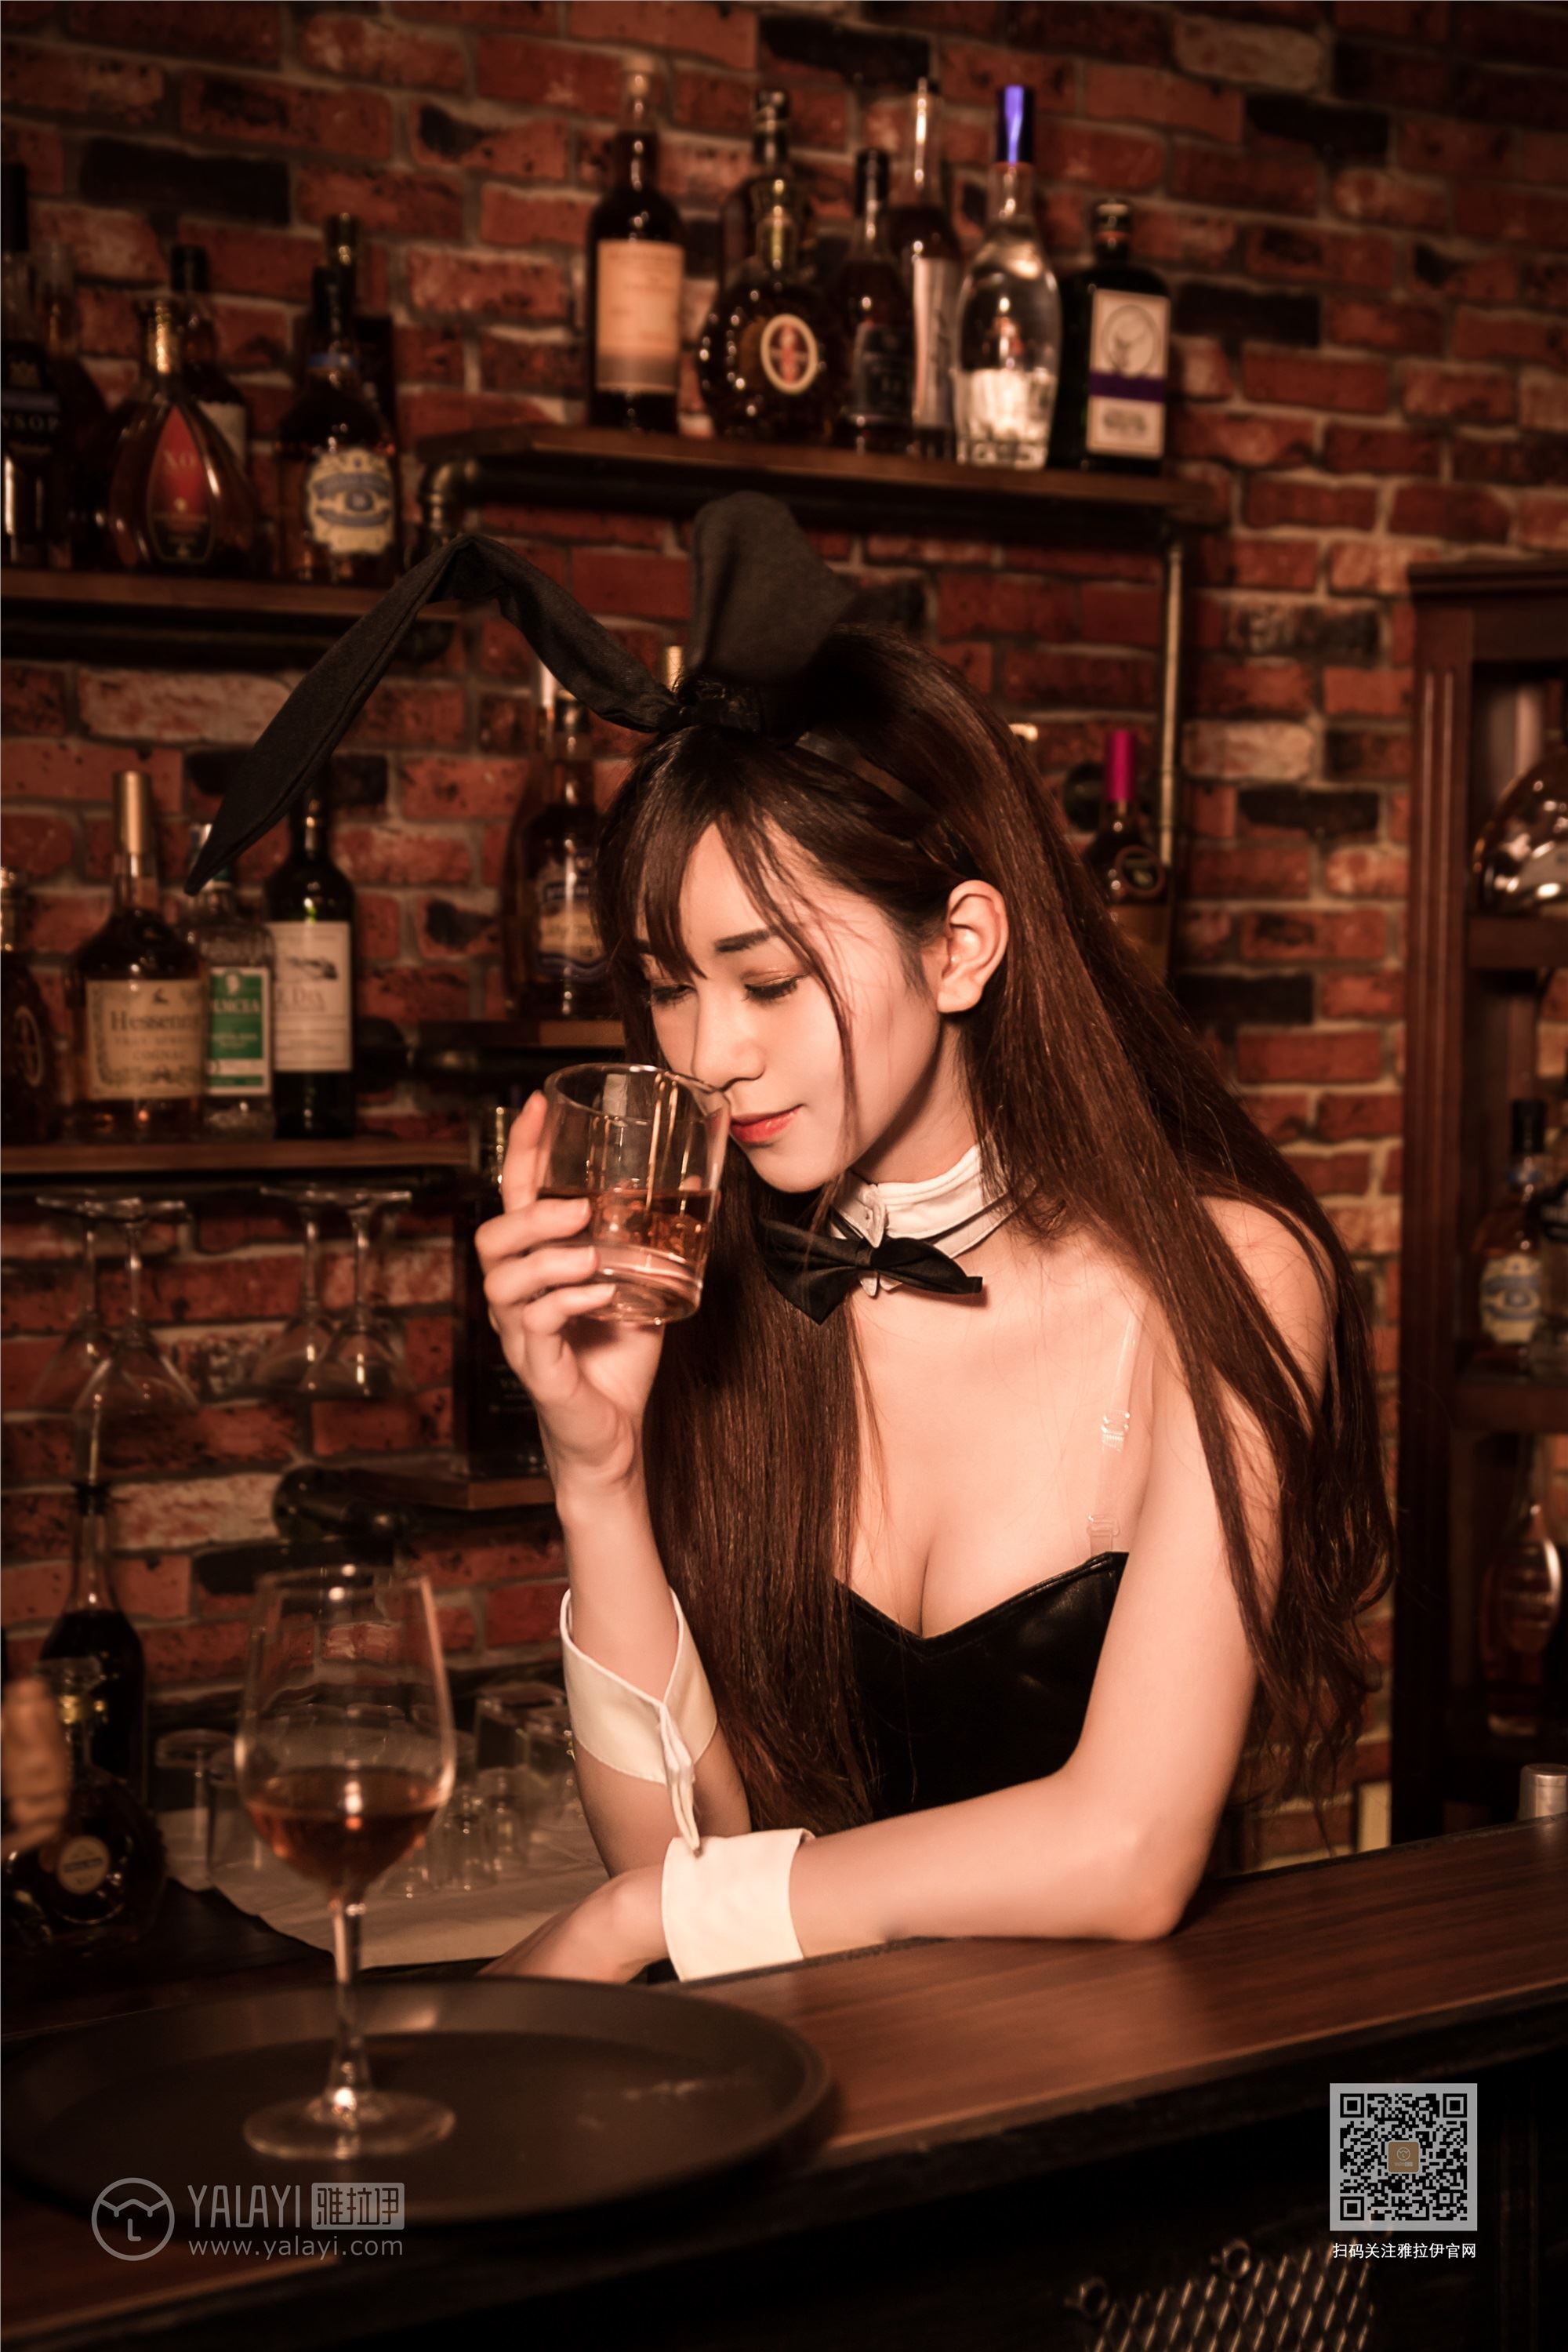 Yalayi yalayi 2020.02.03 y533 bar Bunny by Chen Ruobing